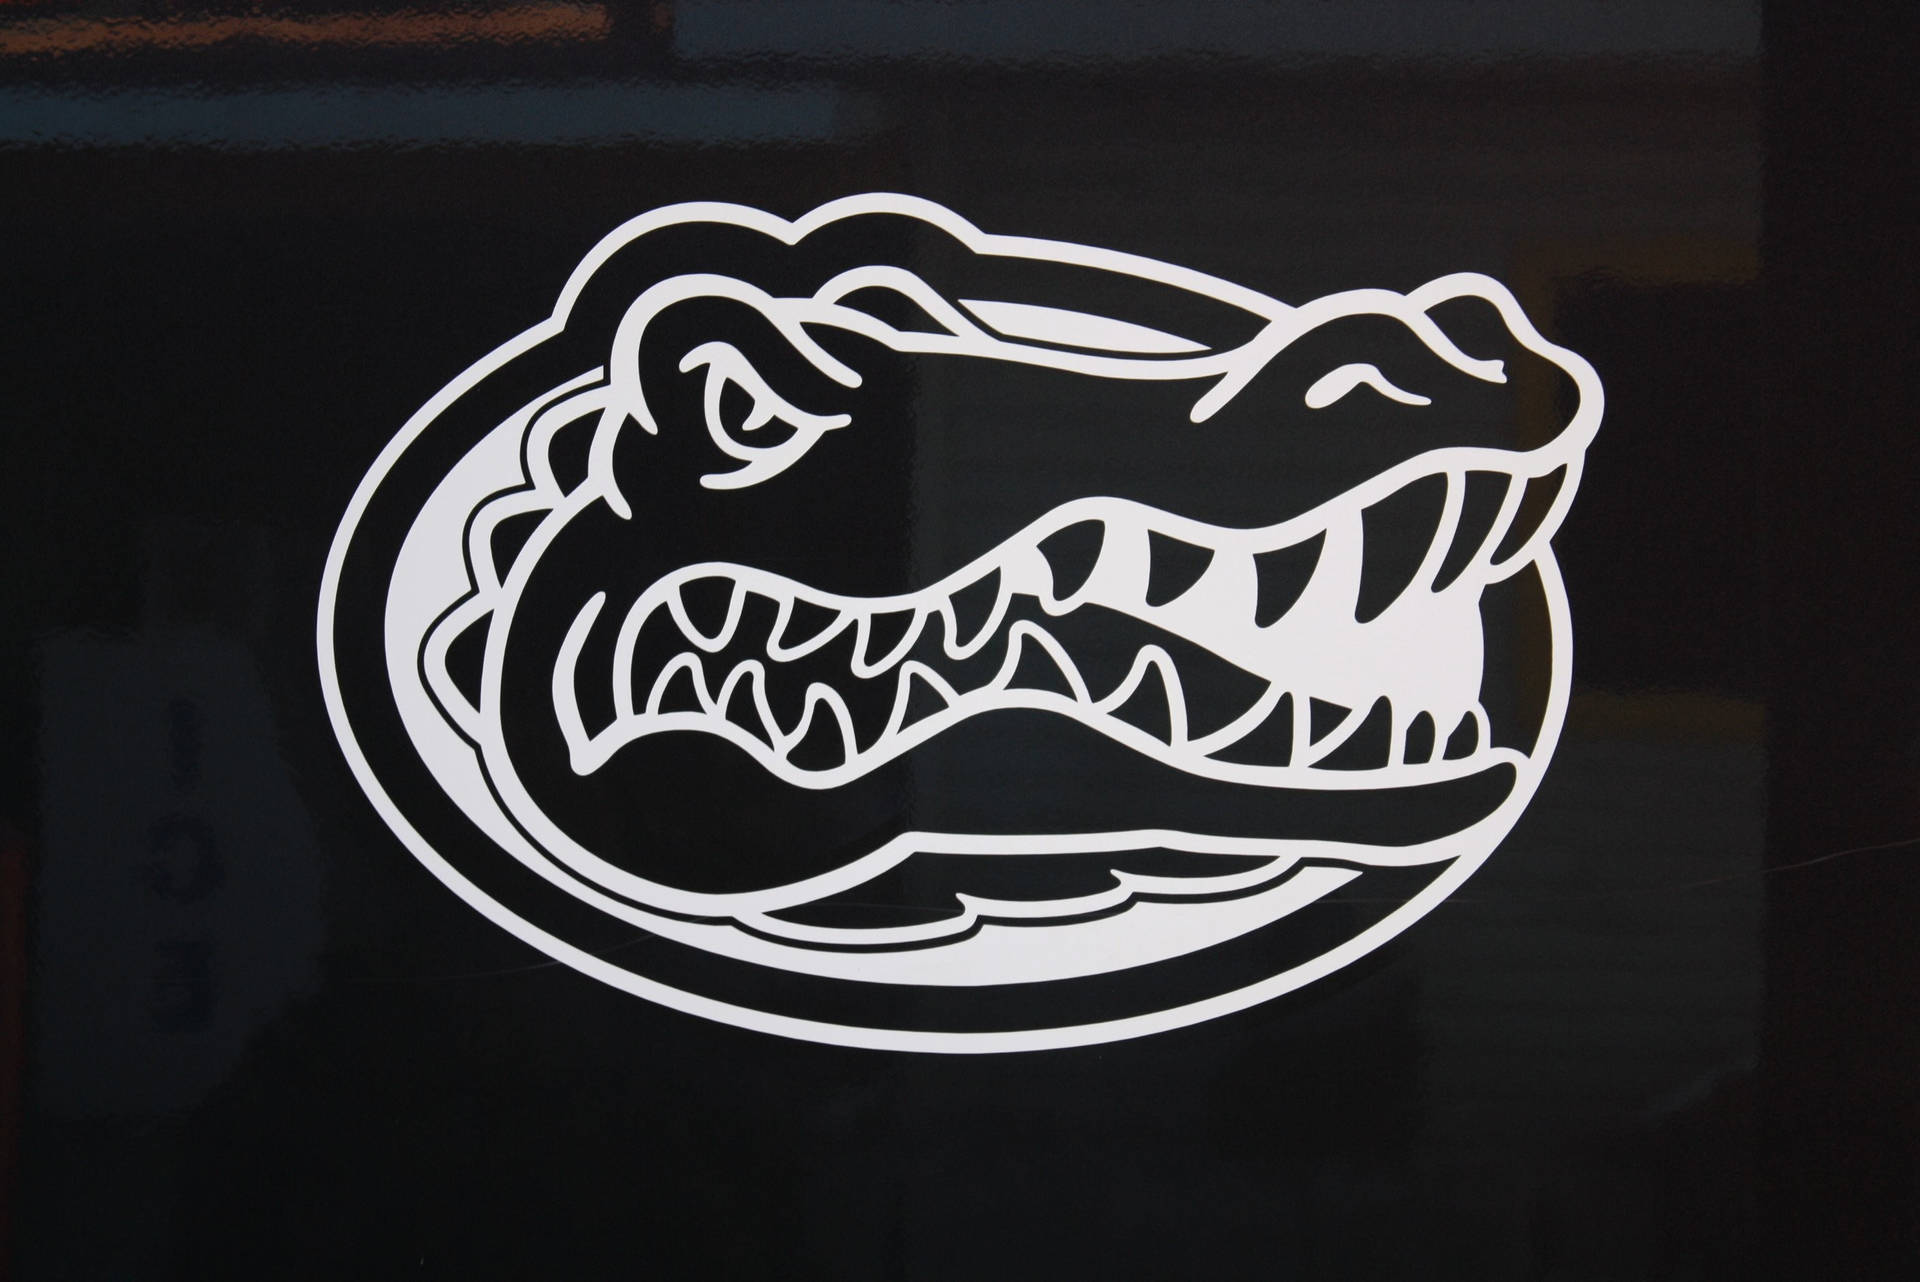 Papelde Parede Para Computador Ou Celular Com O Logo Escuro Dos Florida Gators. Papel de Parede